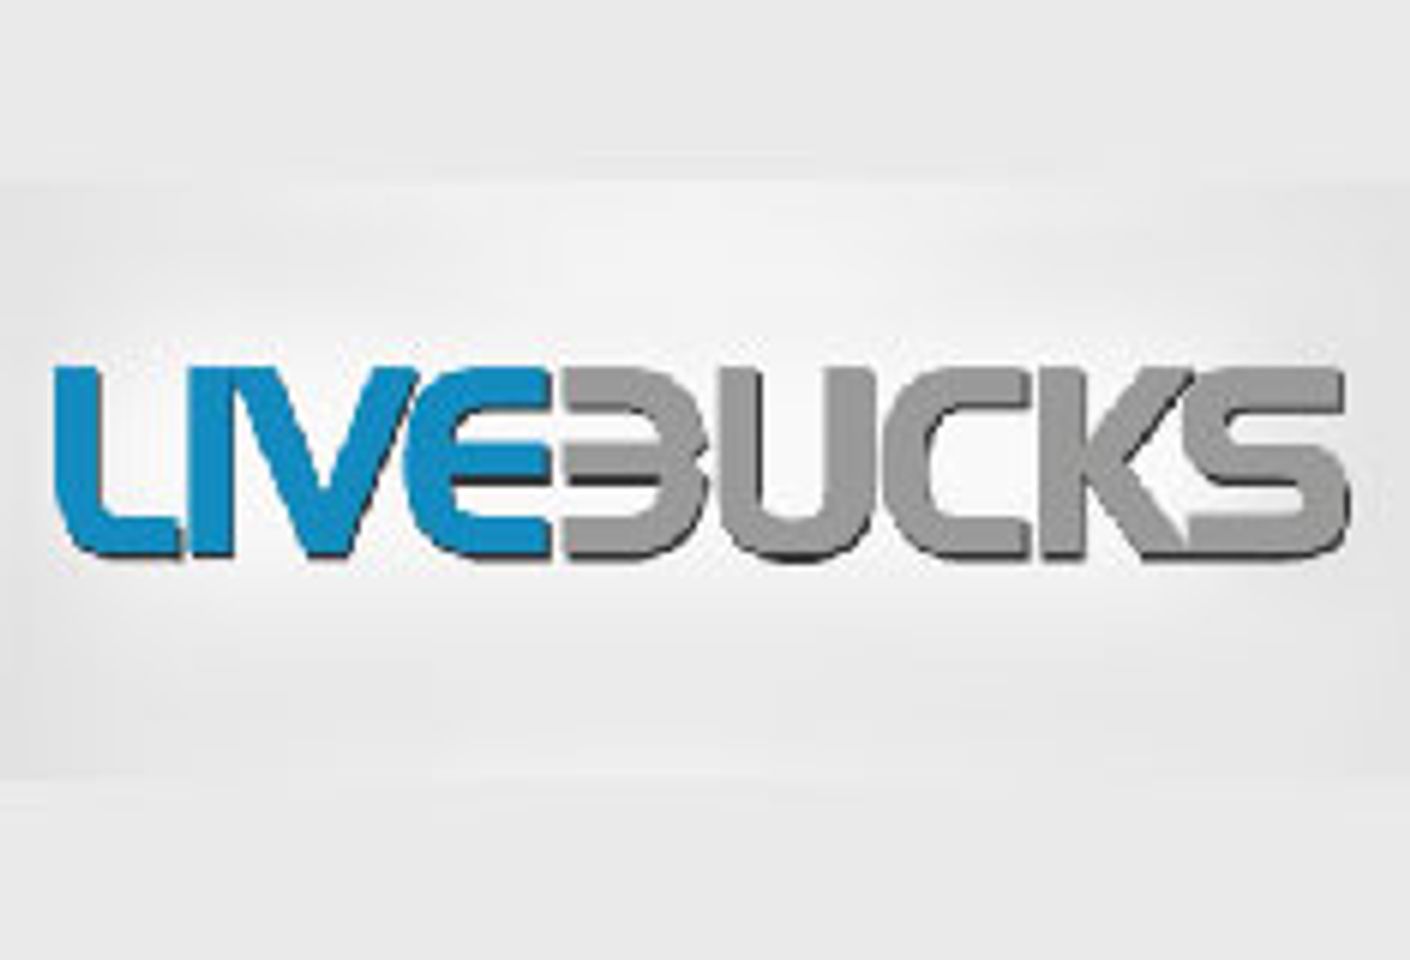 LiveBucks.com Releases LiveLatina.com